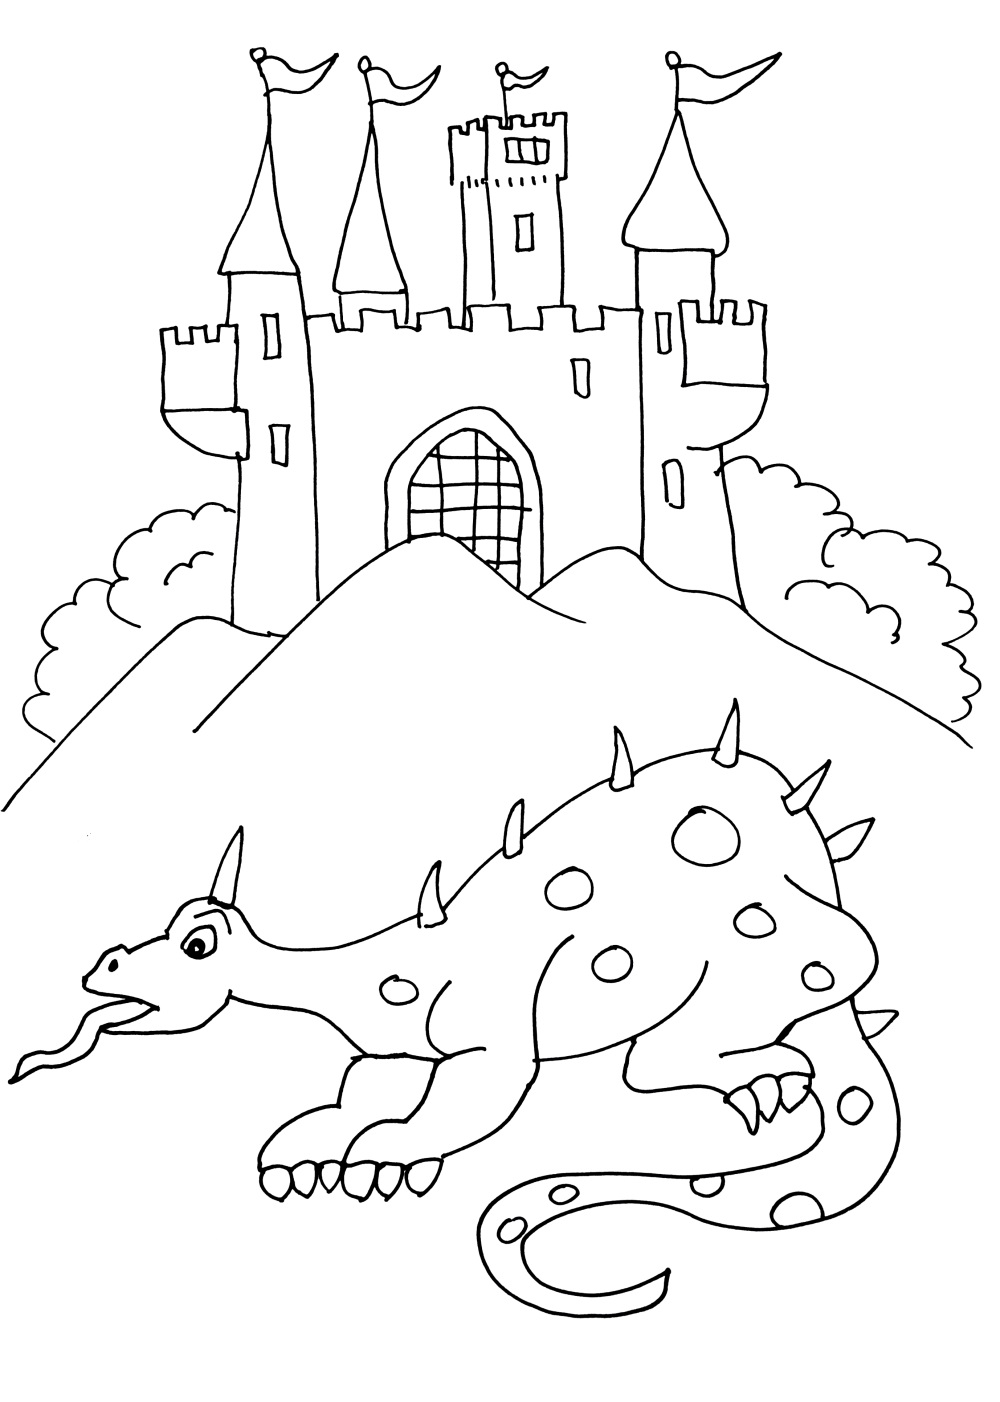 Un dragon devant un chateau